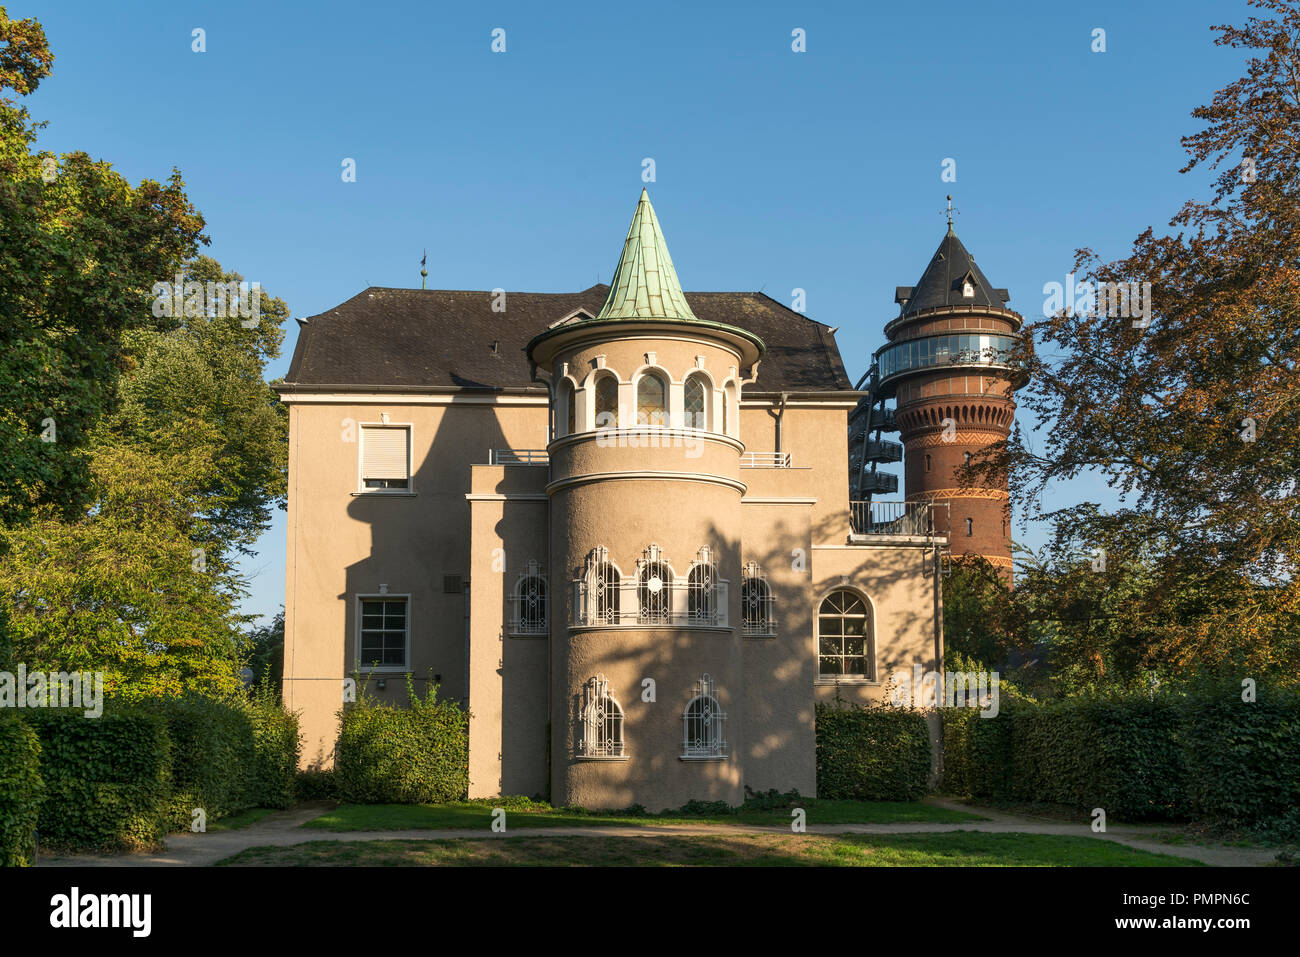 Schloss Styrum und Wasserturm Aquarius Wassermuseum de Styrum, Mülheim an der Ruhr, Nordrhein-Westfalen, Deutschland, Europa | Château Styrum et wate Banque D'Images